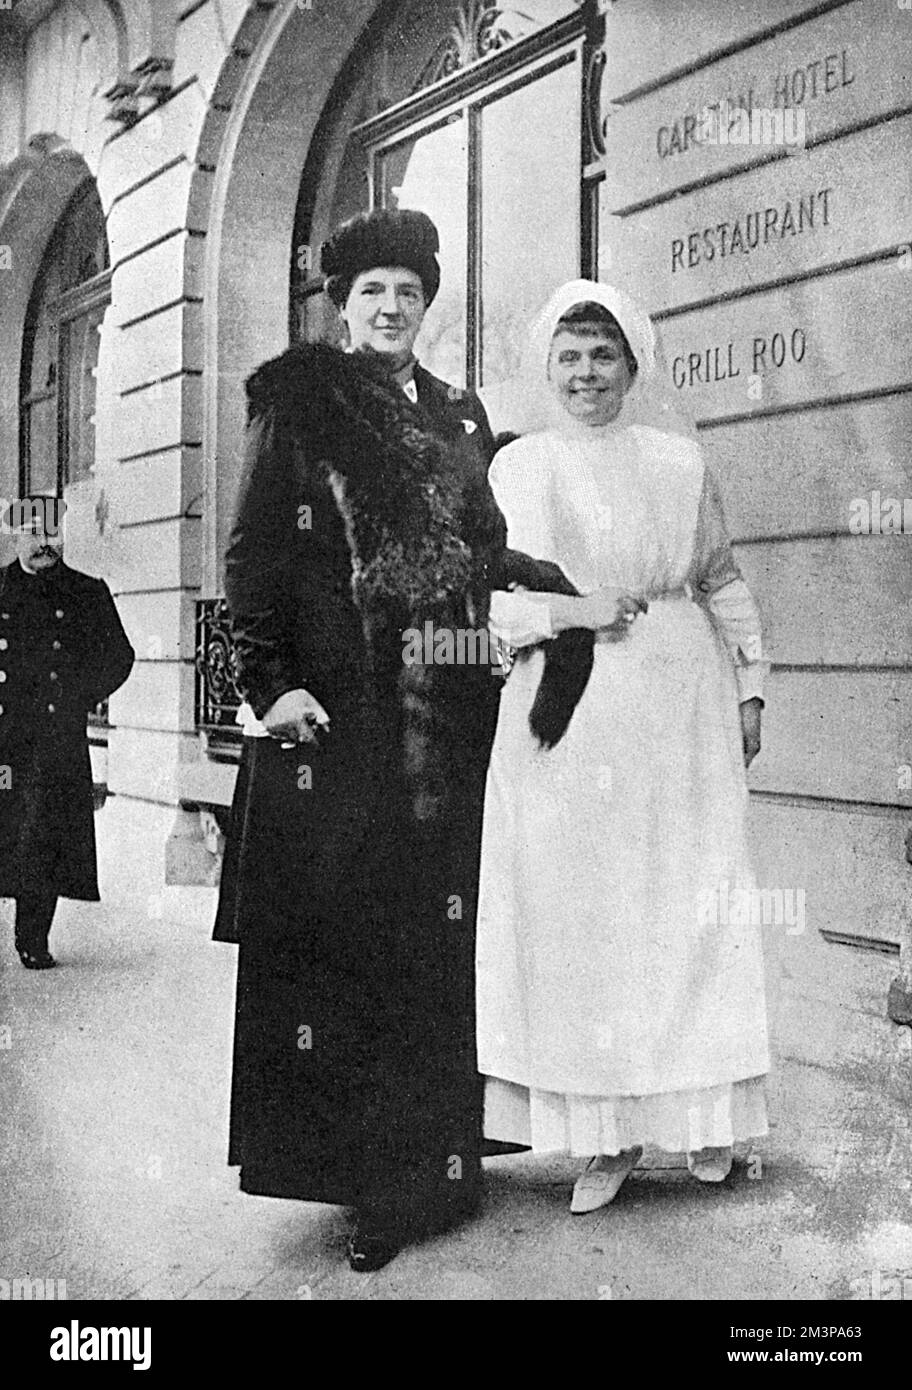 Ein Foto von Königin Amelie von Portugal (links) (1865-1951), in Paris neben Madame Iswolsky, der Frau des russischen Botschafters, gekleidet in einer Krankenschwester-Uniform. Vor dem Carlton Hotel, das WW1 als russisches Krankenhaus genutzt wurde. Datum: 1916 Stockfoto